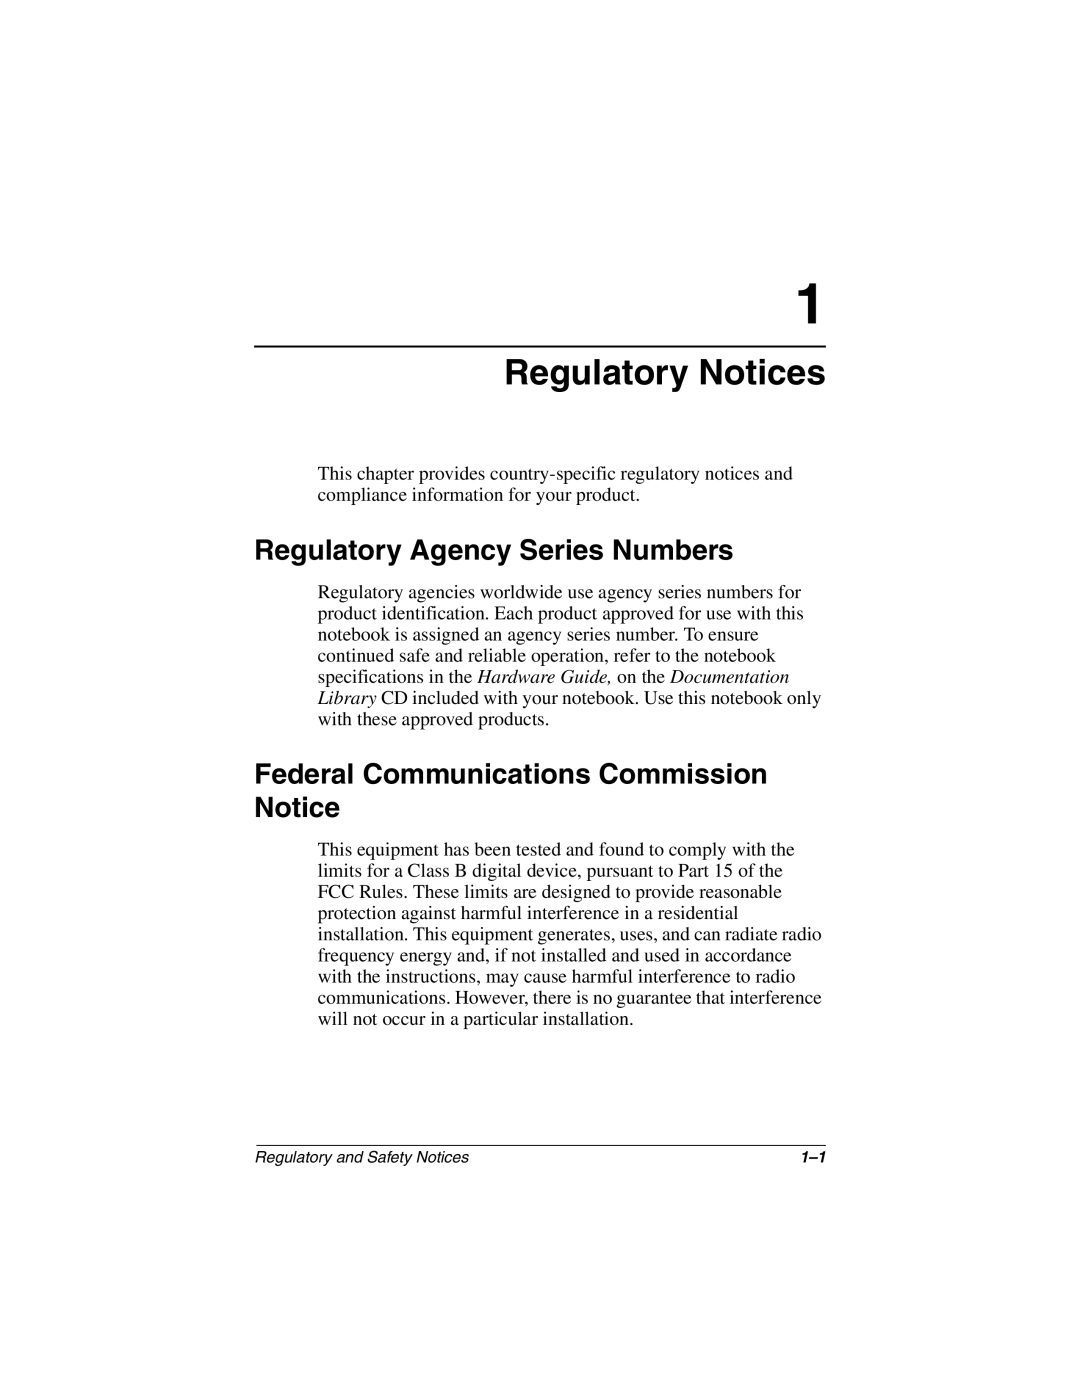 HP 2892AP, 2899AP, 2897AP, 2896AP, 2898AP, 2895AP Regulatory Agency Series Numbers, Federal Communications Commission Notice 